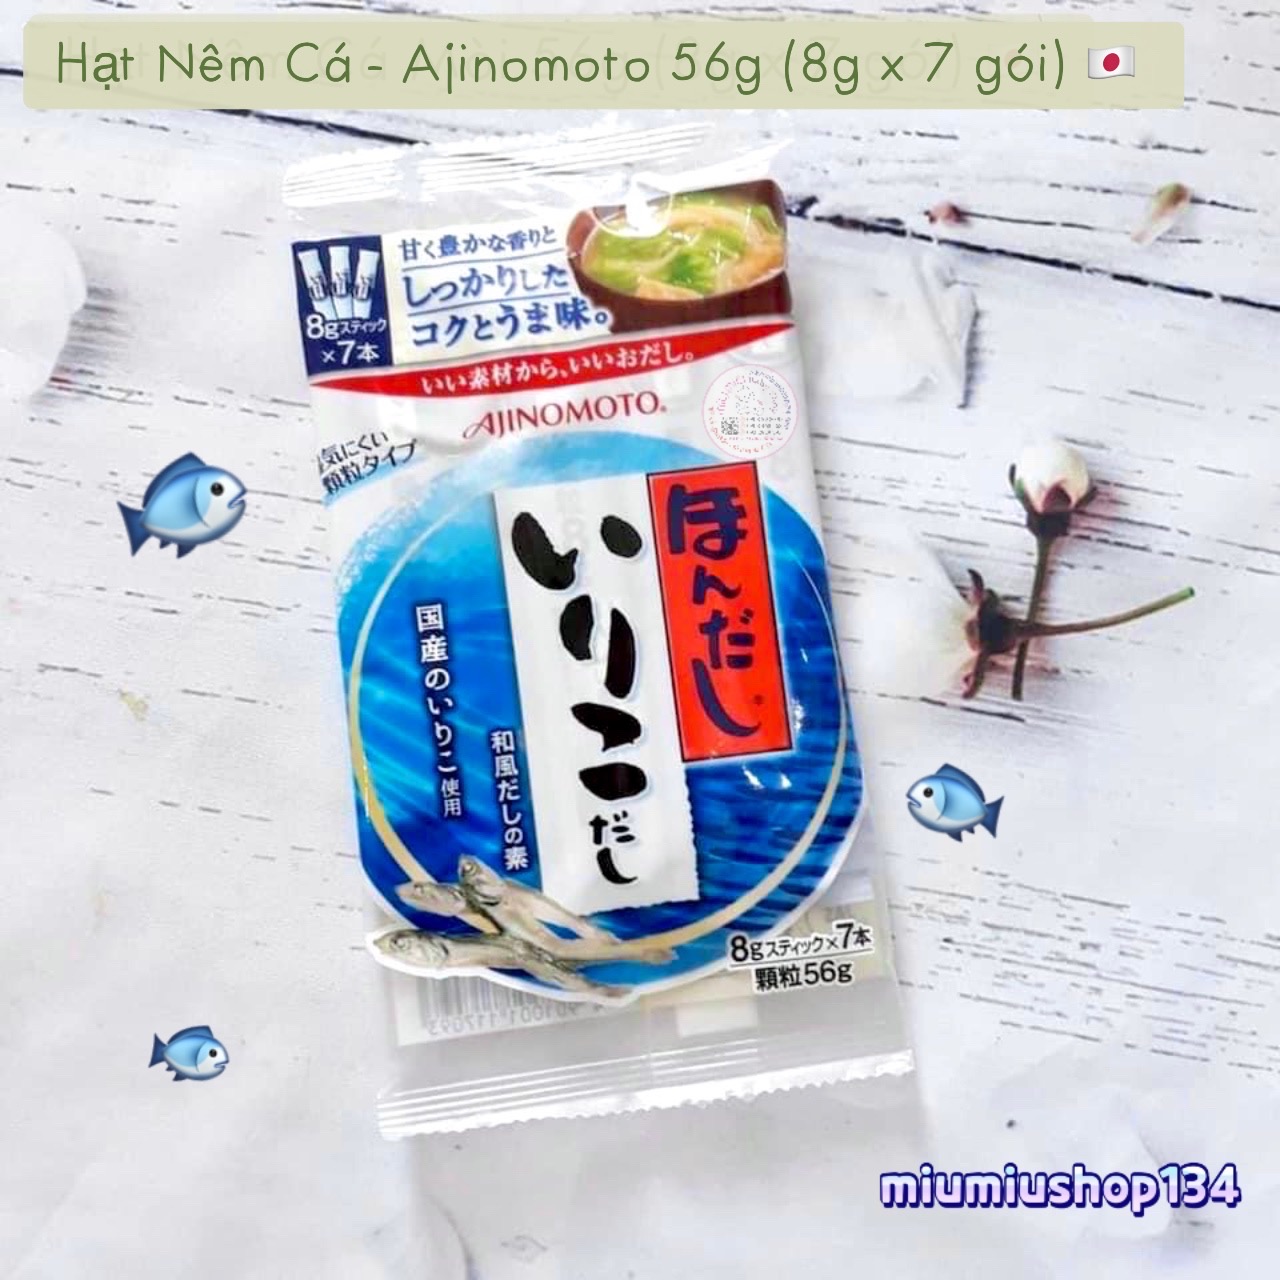 Hạt Nêm Cá - Ajinomoto 56g (8g x 7 gói) 🇯🇵